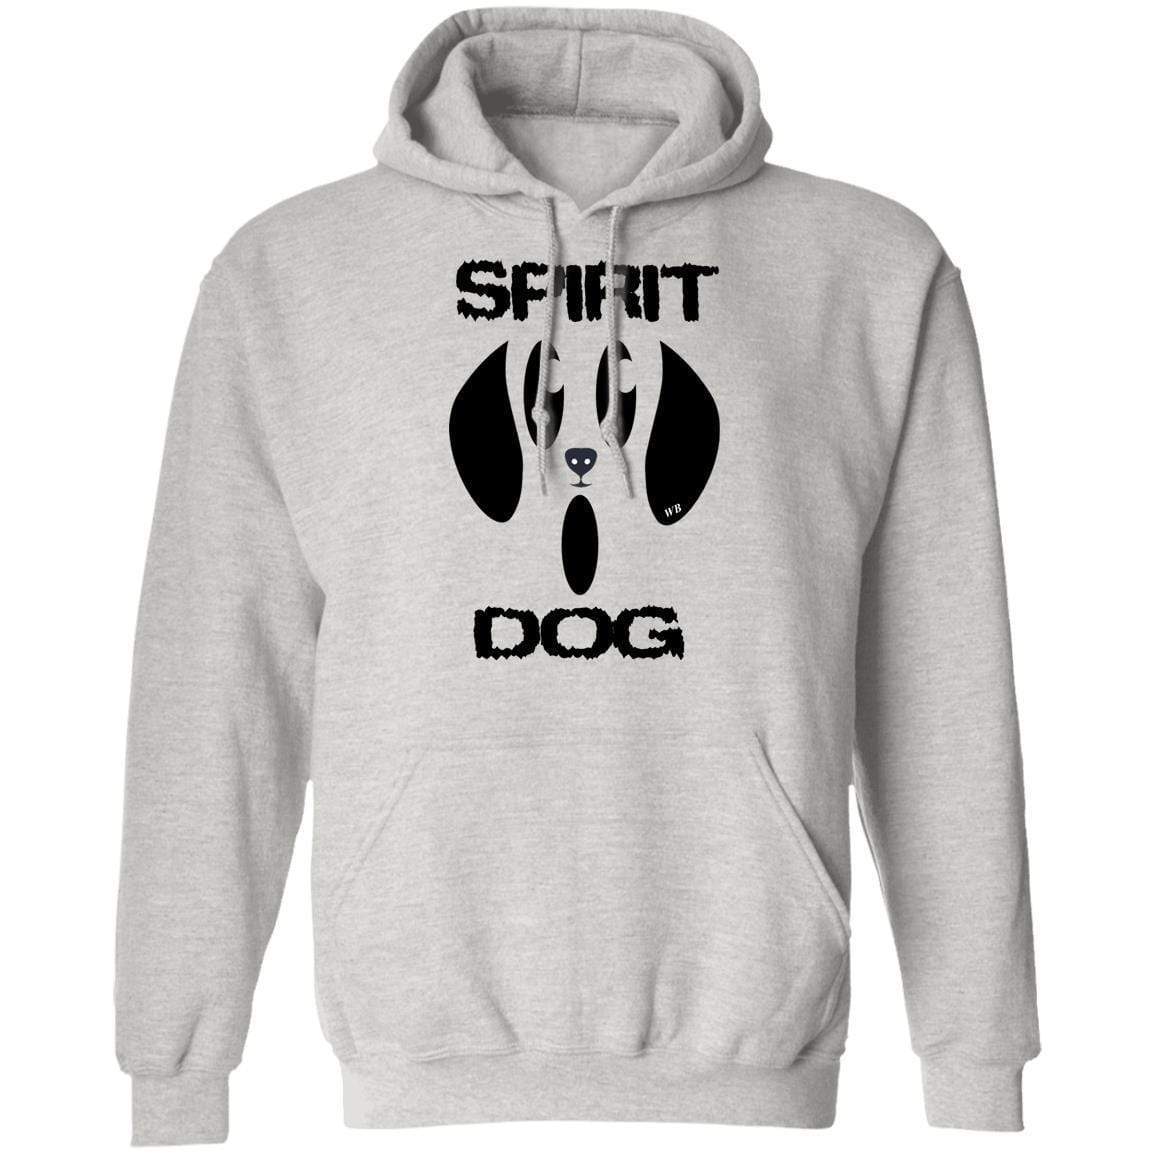 Sweatshirts Ash / S WineyBitches.Co "Spirit Dog" Halloween style Pullover Hoodie 8 oz. WineyBitchesCo